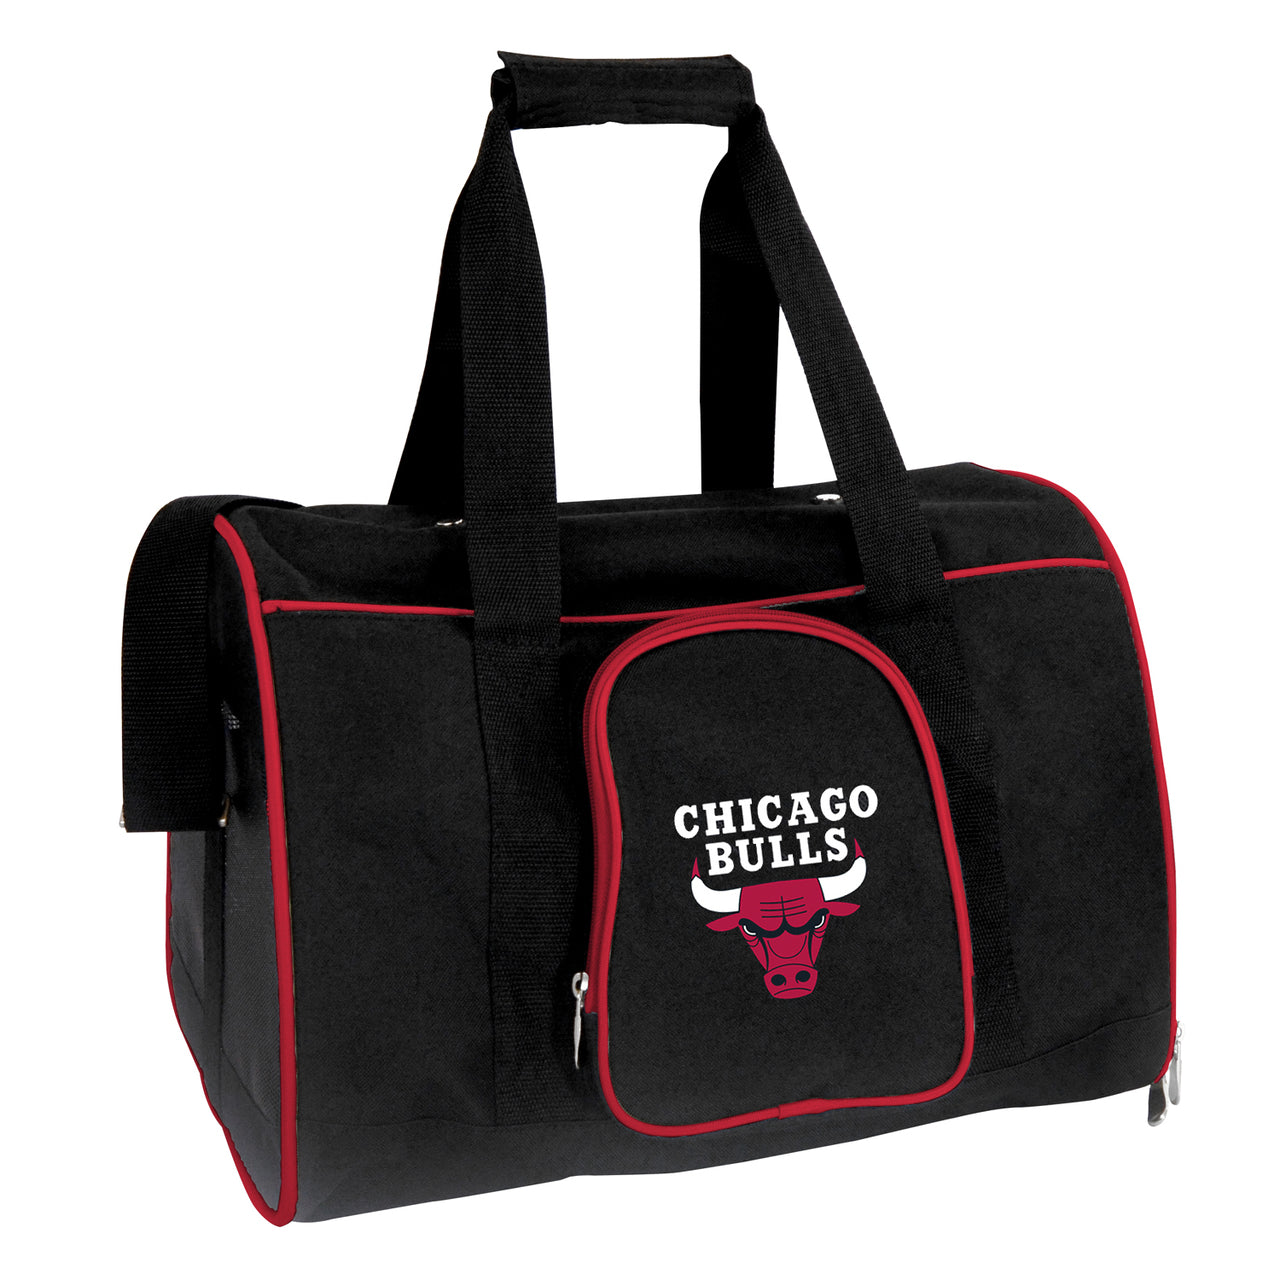 Chicago Bulls 16" Premium Pet Carrier